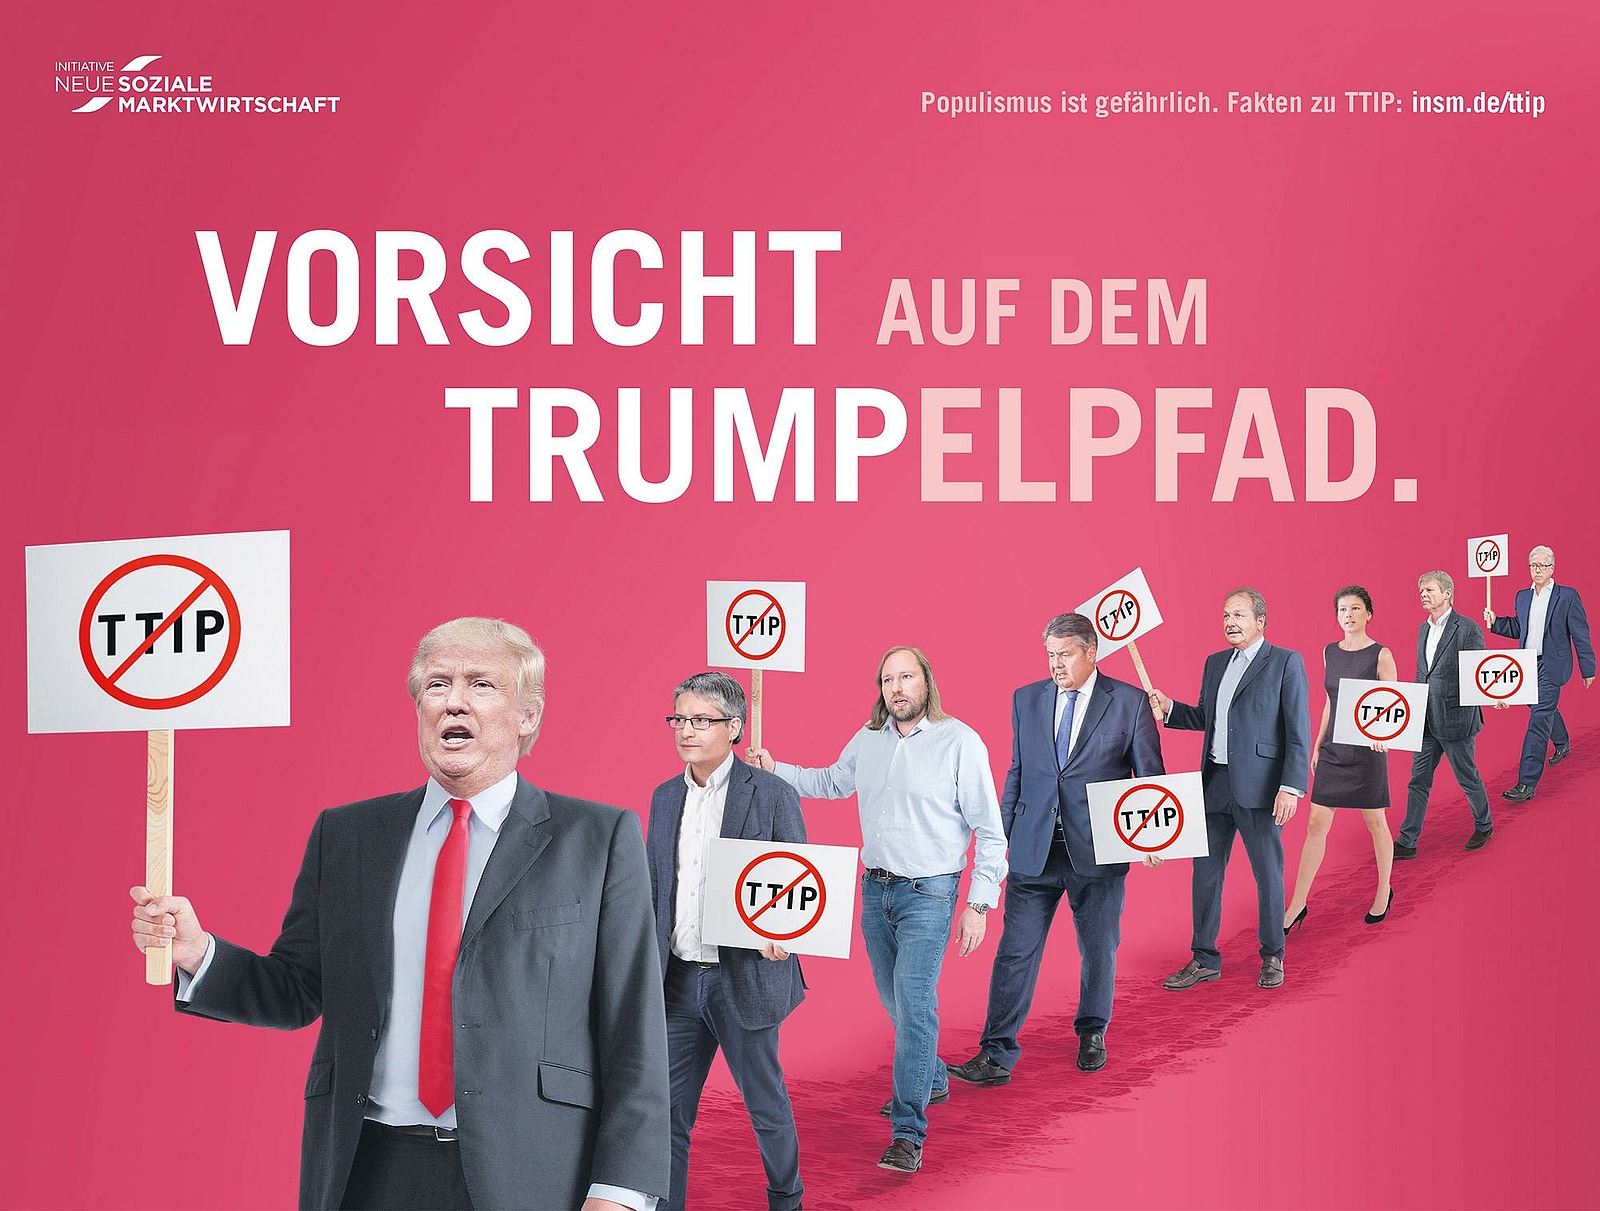 Anzeigenmotiv der INSM - Trumpfelpfad Motiv